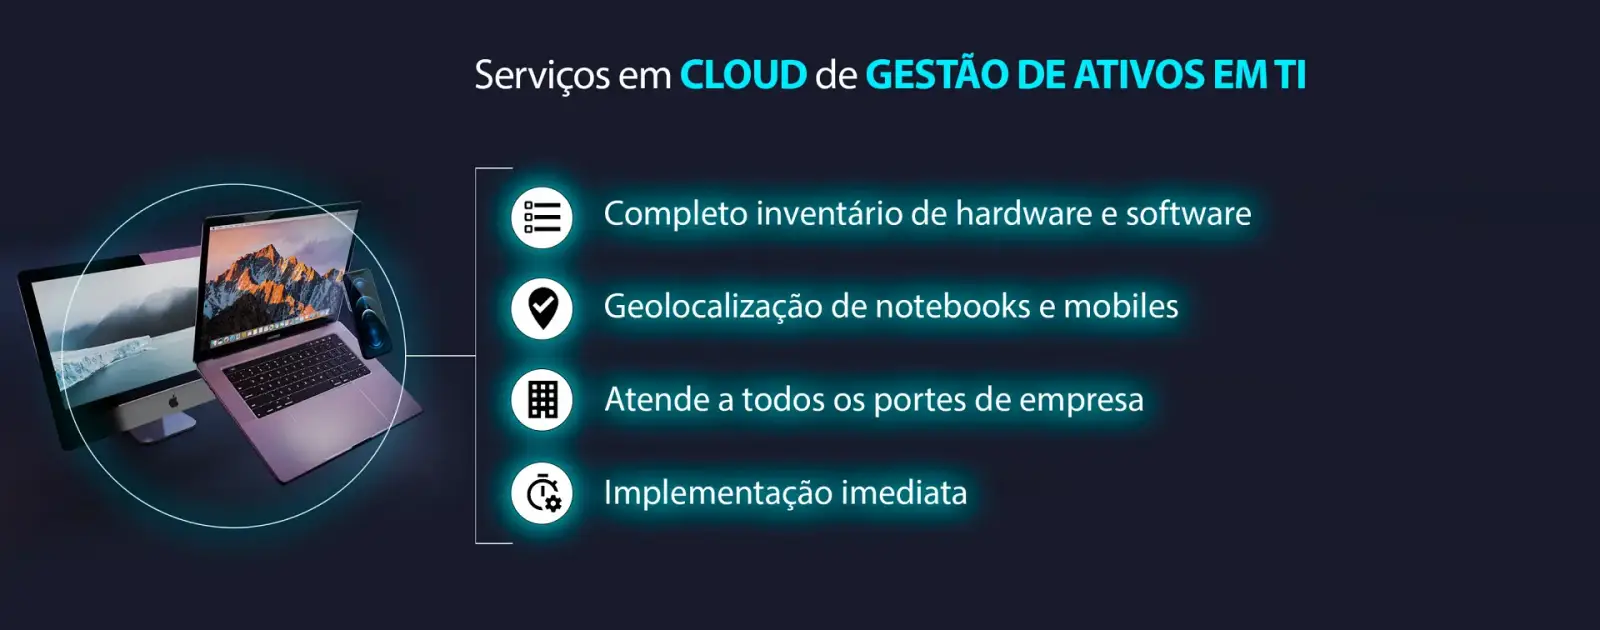 Serviços em Cloud de gestão de ativos em T.I - Easy Inventory